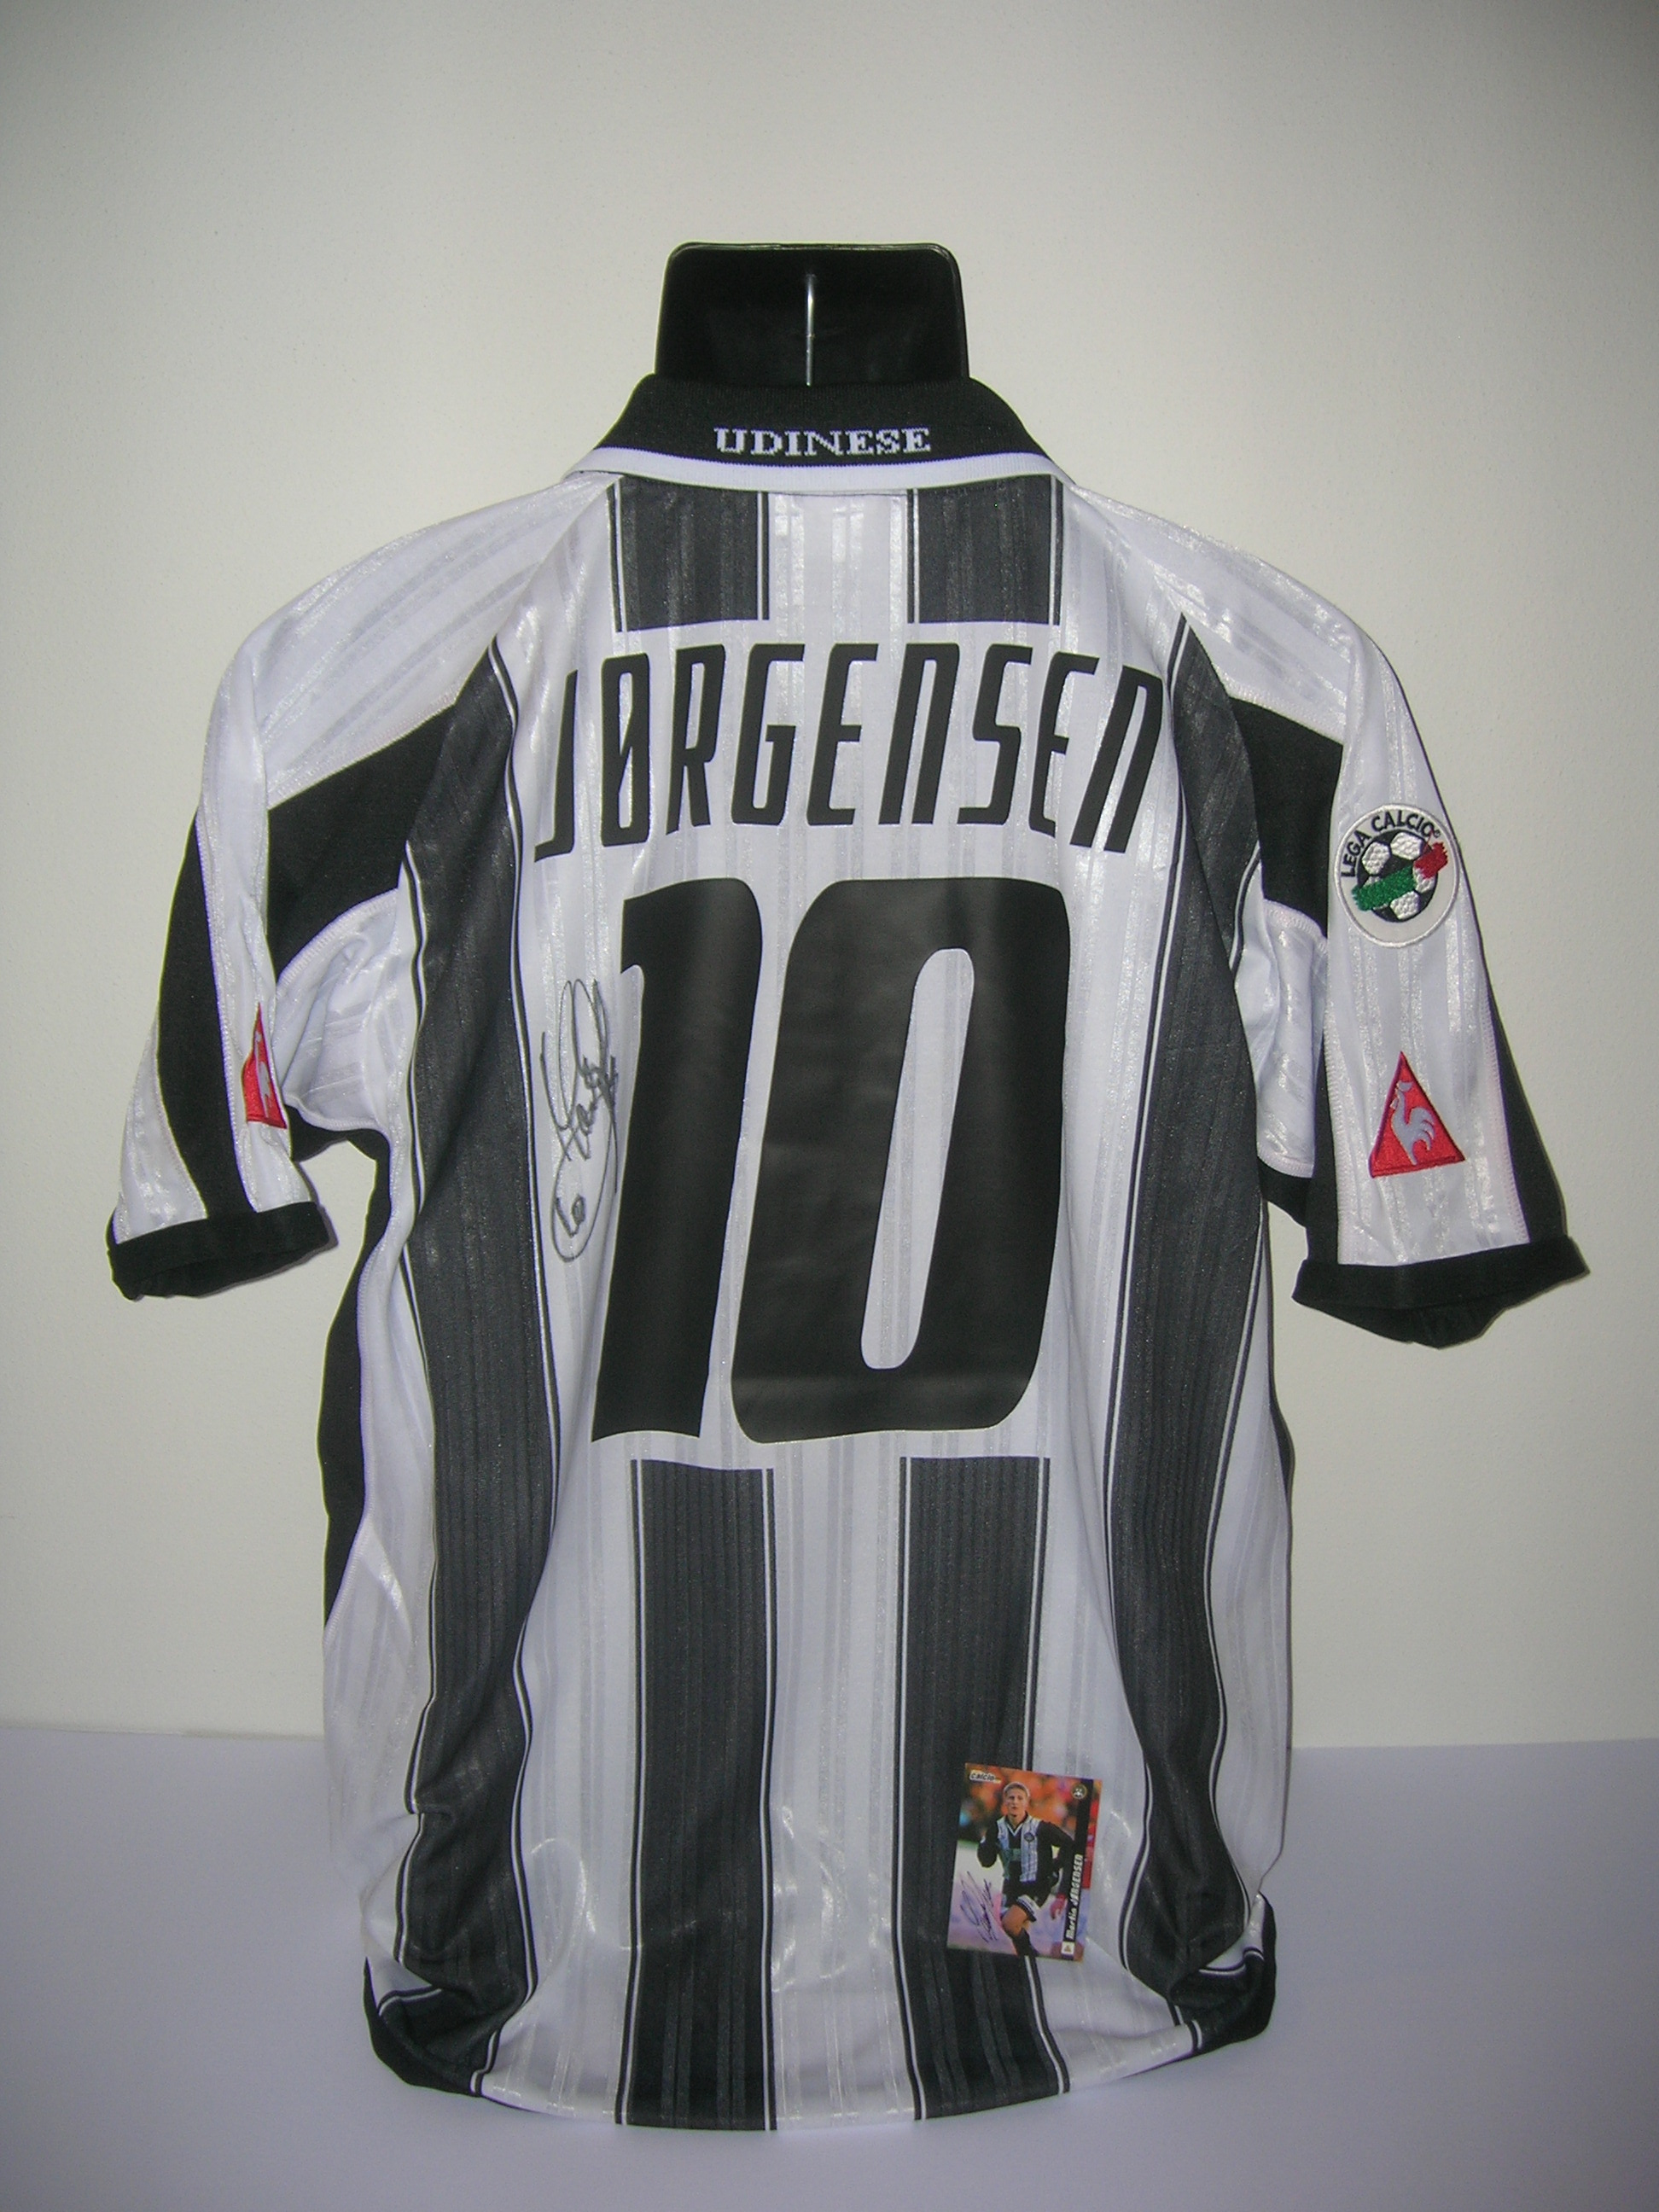 Udinese Jorgensen  10  A-4